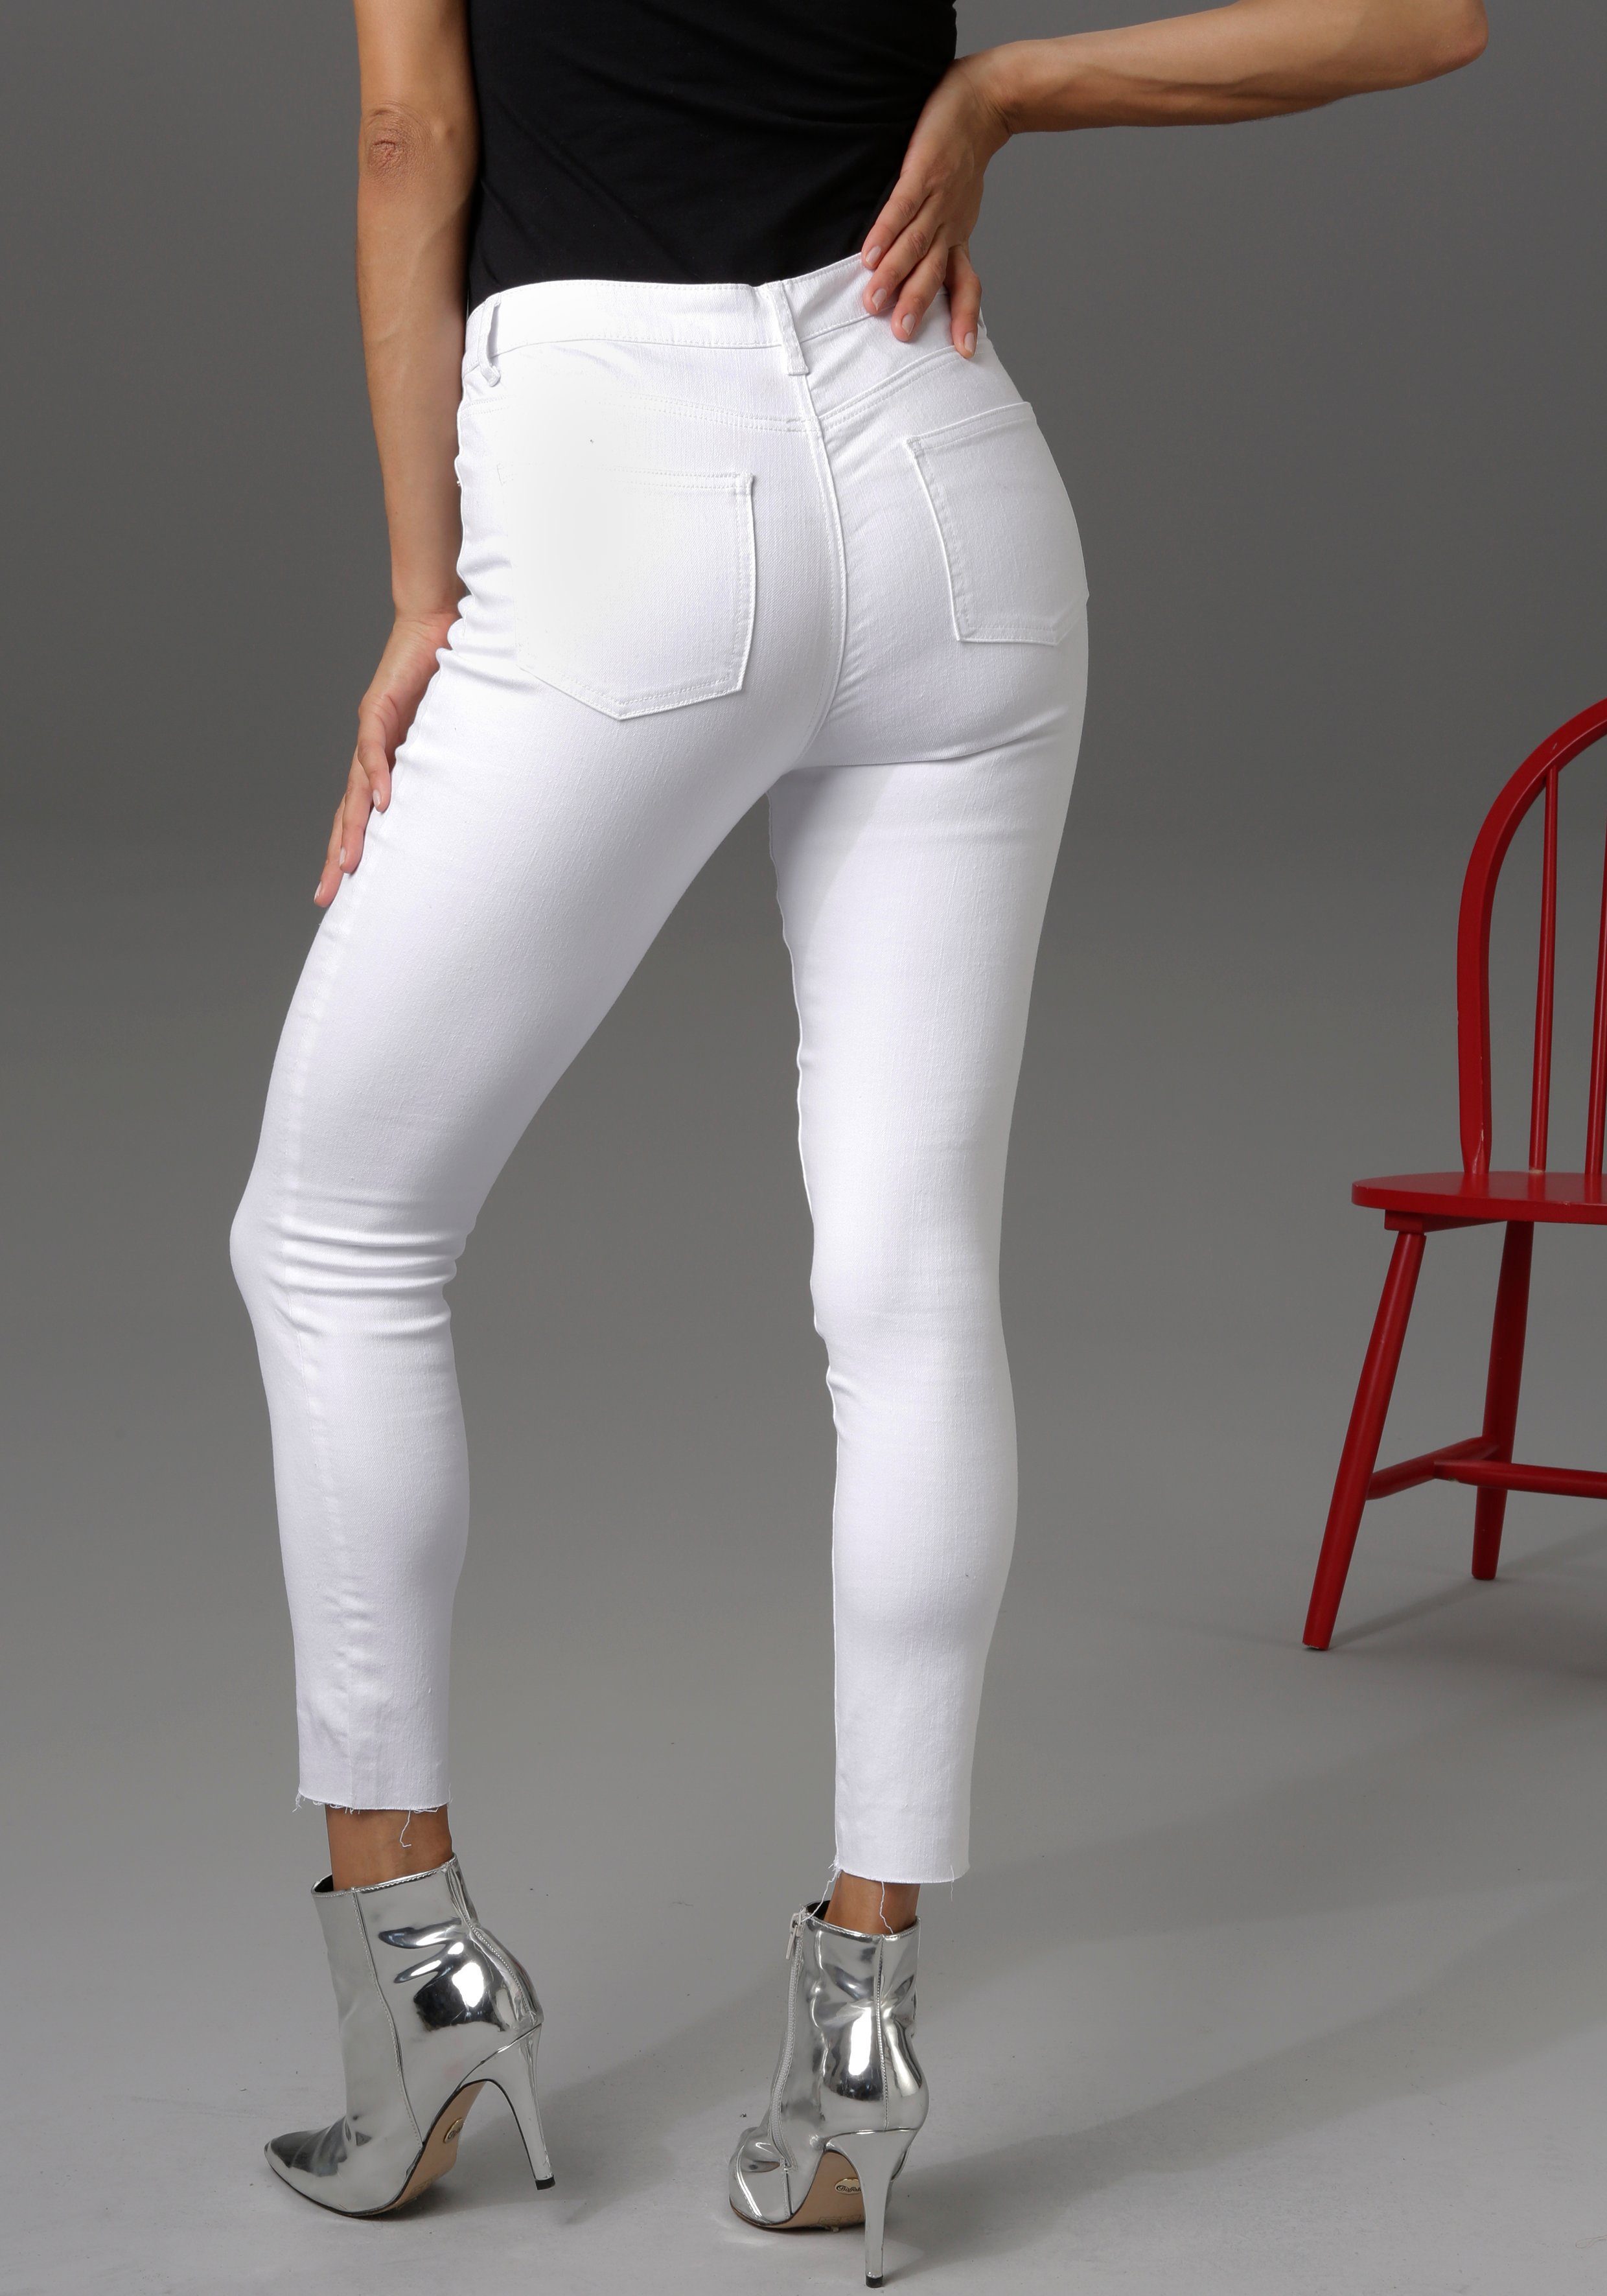 Aniston CASUAL Skinny-fit-Jeans regular waist - white Beinabschluss ausgefransten mit